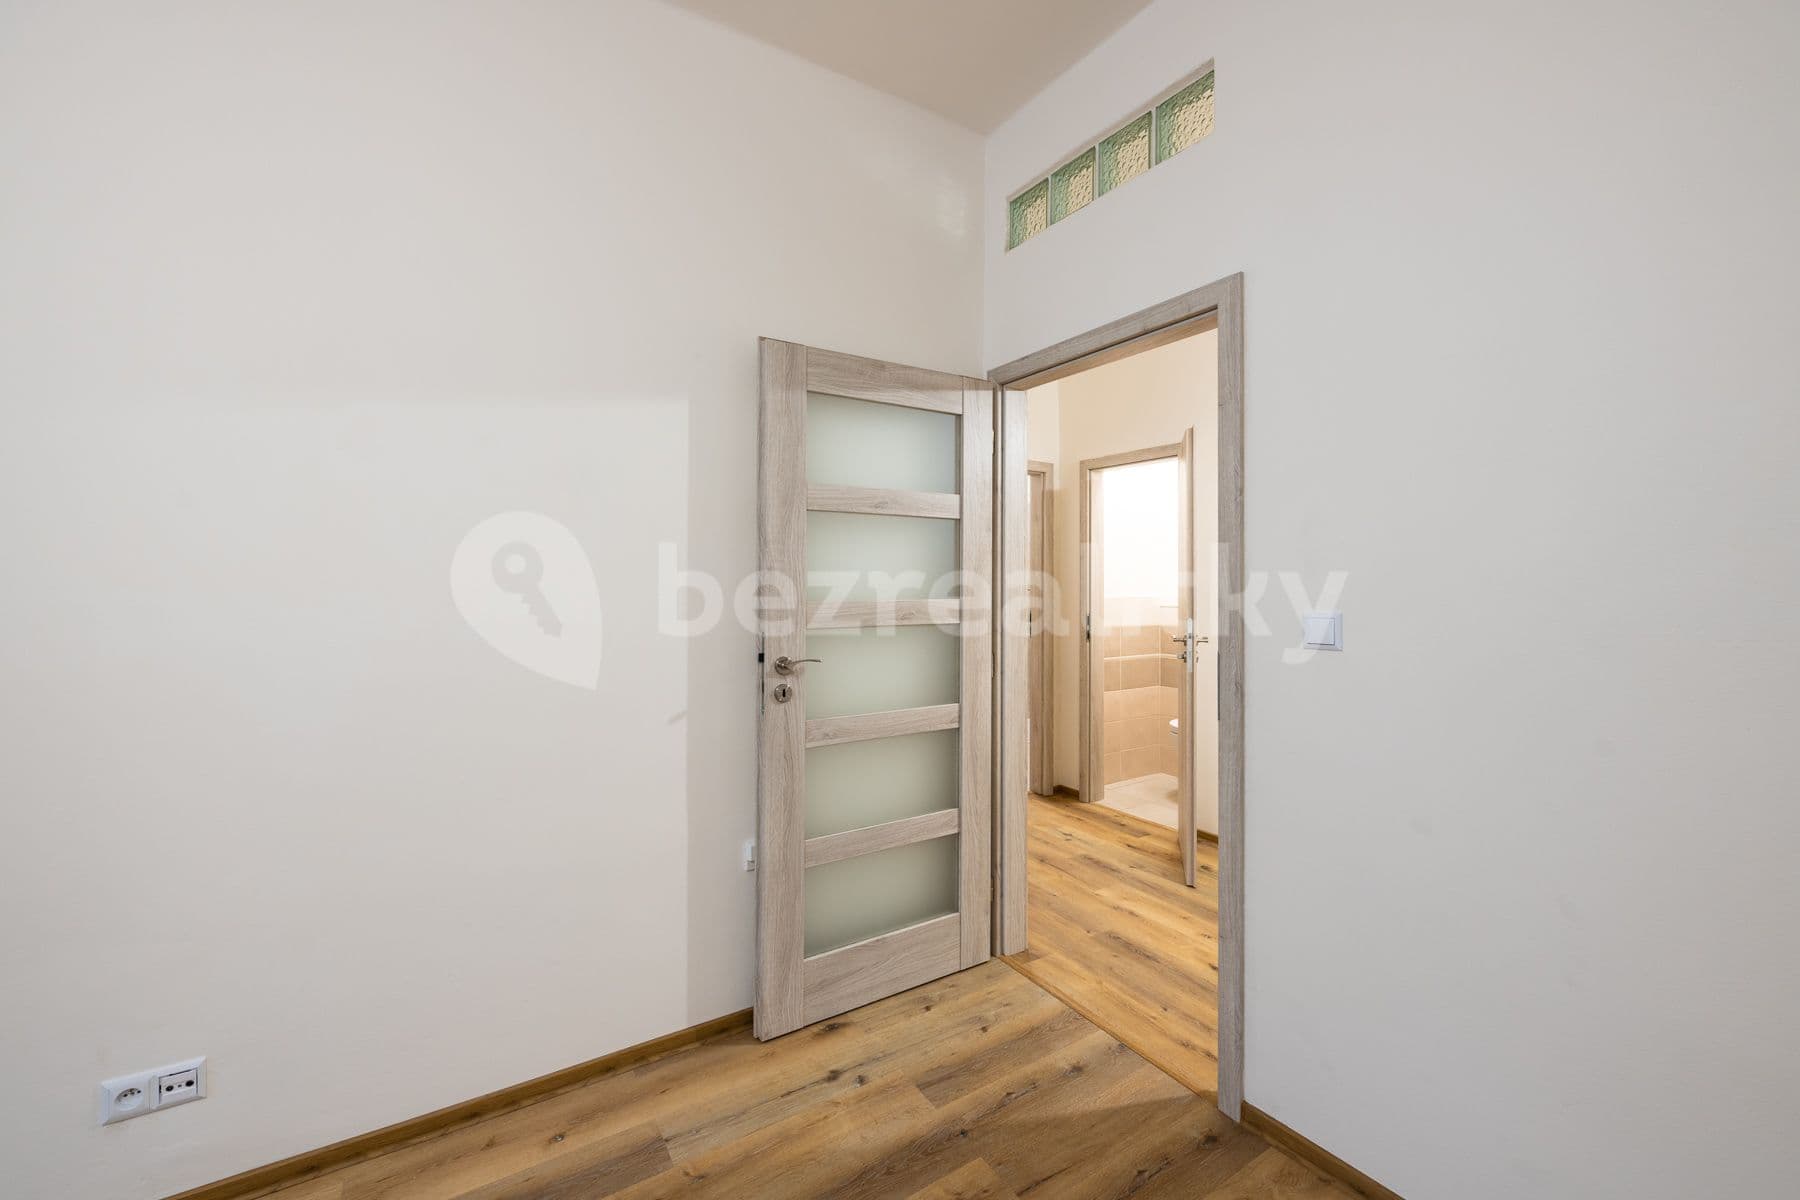 1 bedroom with open-plan kitchen flat for sale, 48 m², Podolská, Prague, Prague